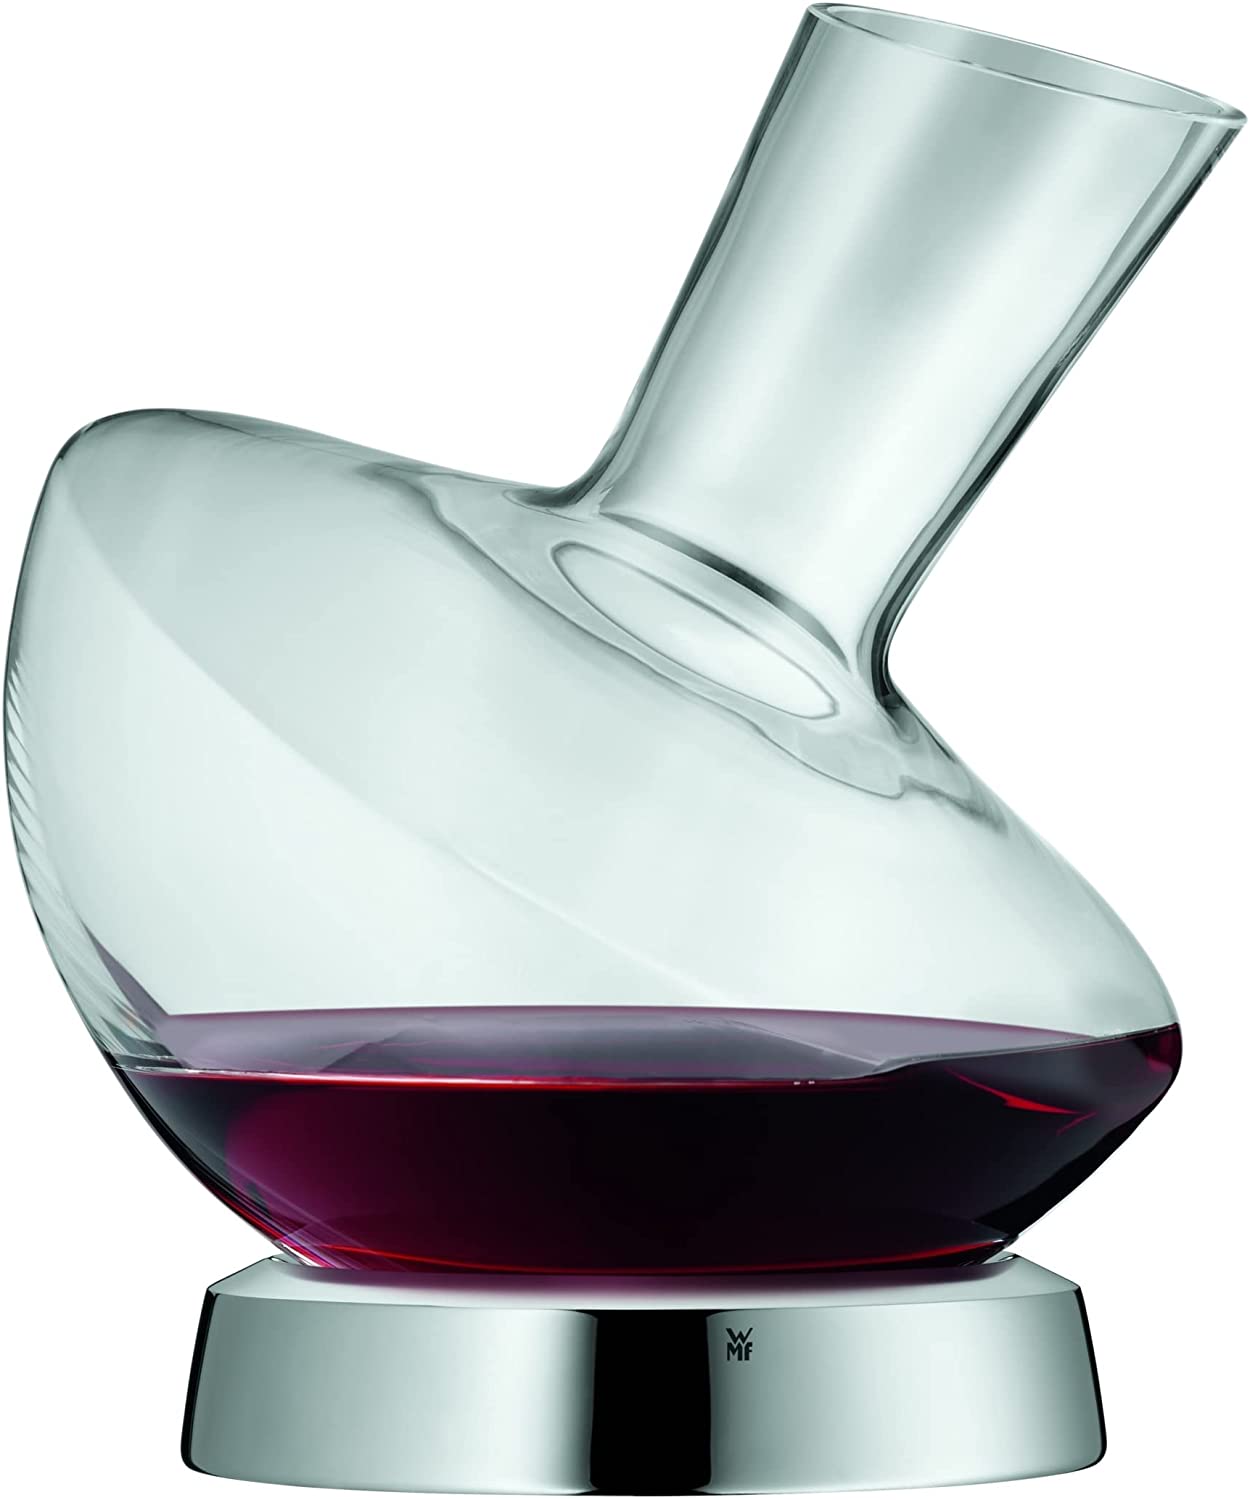 WMF Jette Weindekanter mit Edelstahl-Sockel 0,75l, Glas, Dekantierflasche für Rotwein, Weinbelüfter, pflegeleicht, formschön, edel, hochwertig,